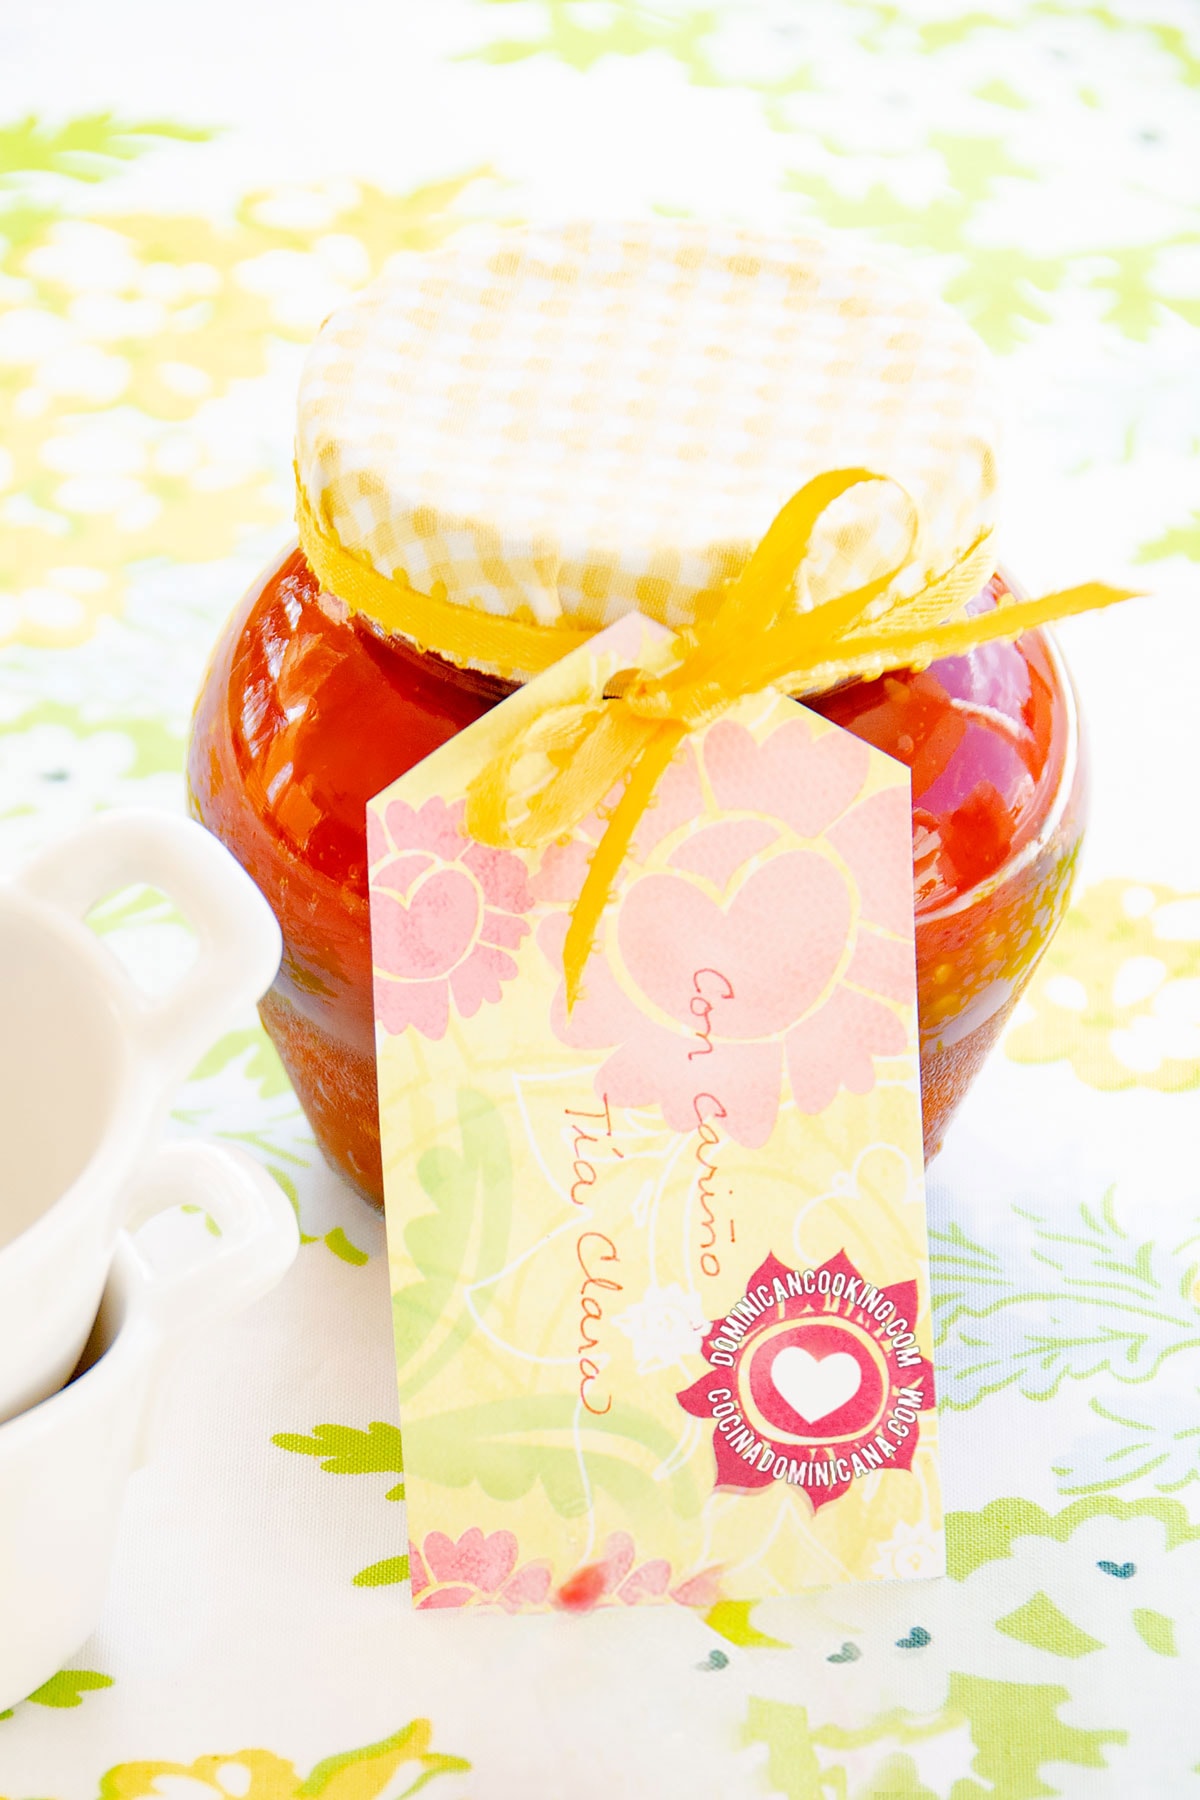 Jar of Dulce de Tomate (Tomato Jam)